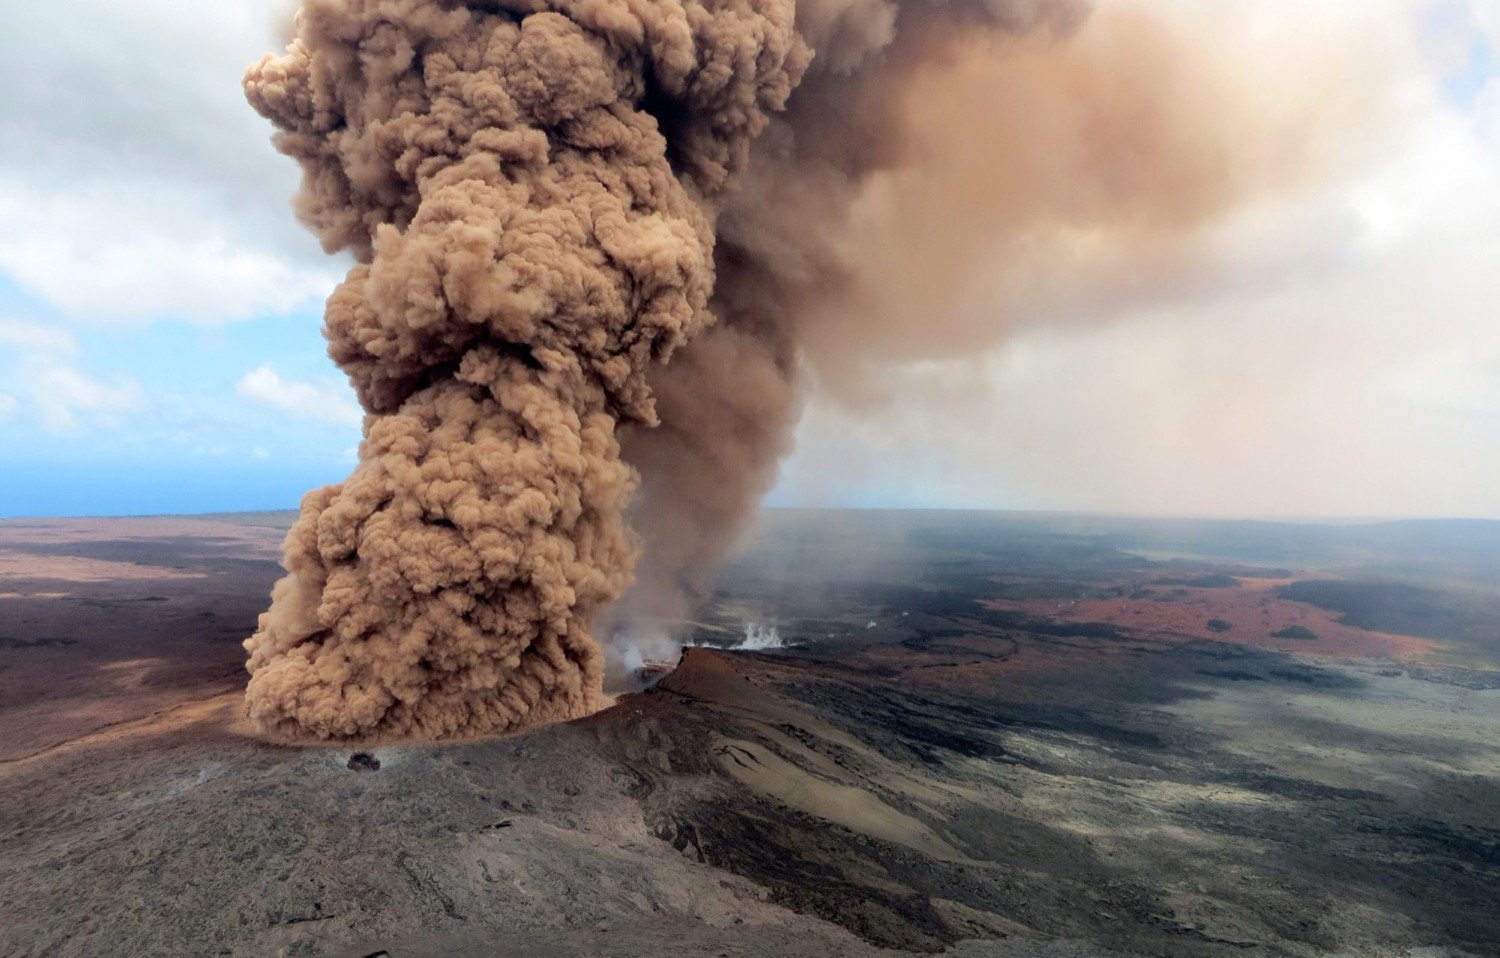 Die Situation auf Hawaii verschlechtert, Kilauea kann beginnen zu explodieren